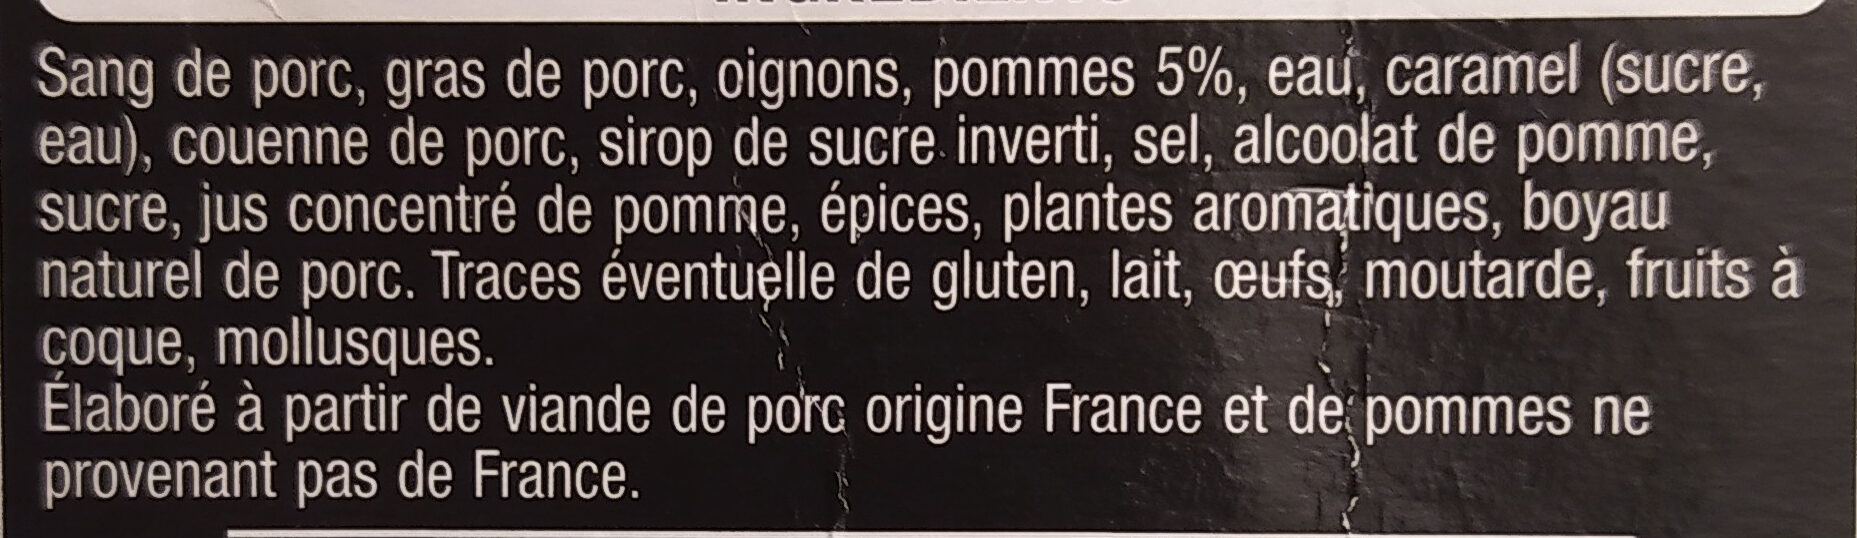 Boudin noir aux pommes x2 - Ingrediënten - fr